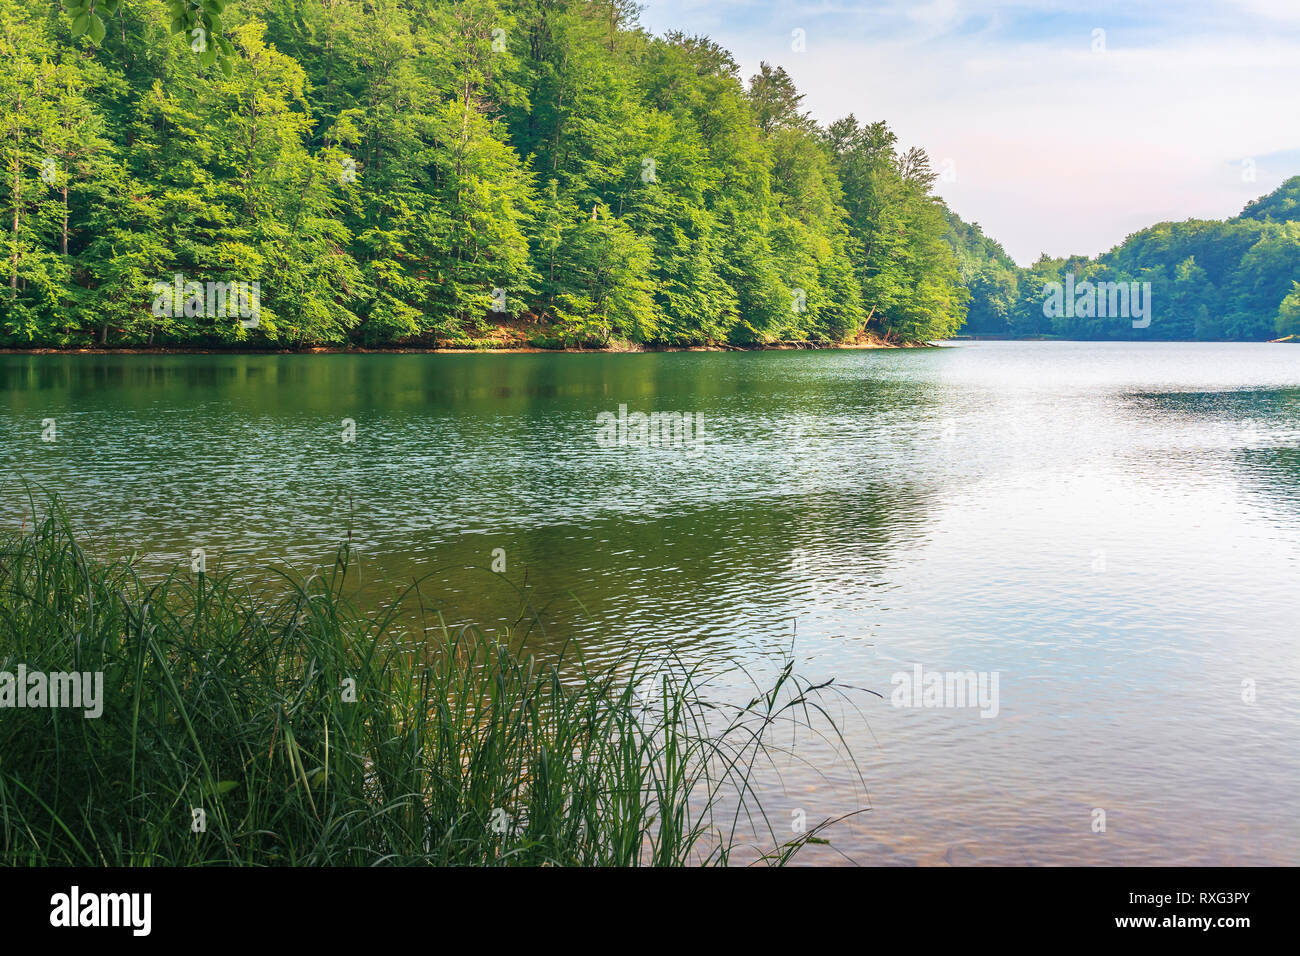 Lo splendido paesaggio vicino al lago tra bosco di faggio con riva erbosa. tranquillo paesaggio estivo nel pomeriggio. La posizione della Slovacchia, vihorlat. viaggi popolari Foto Stock